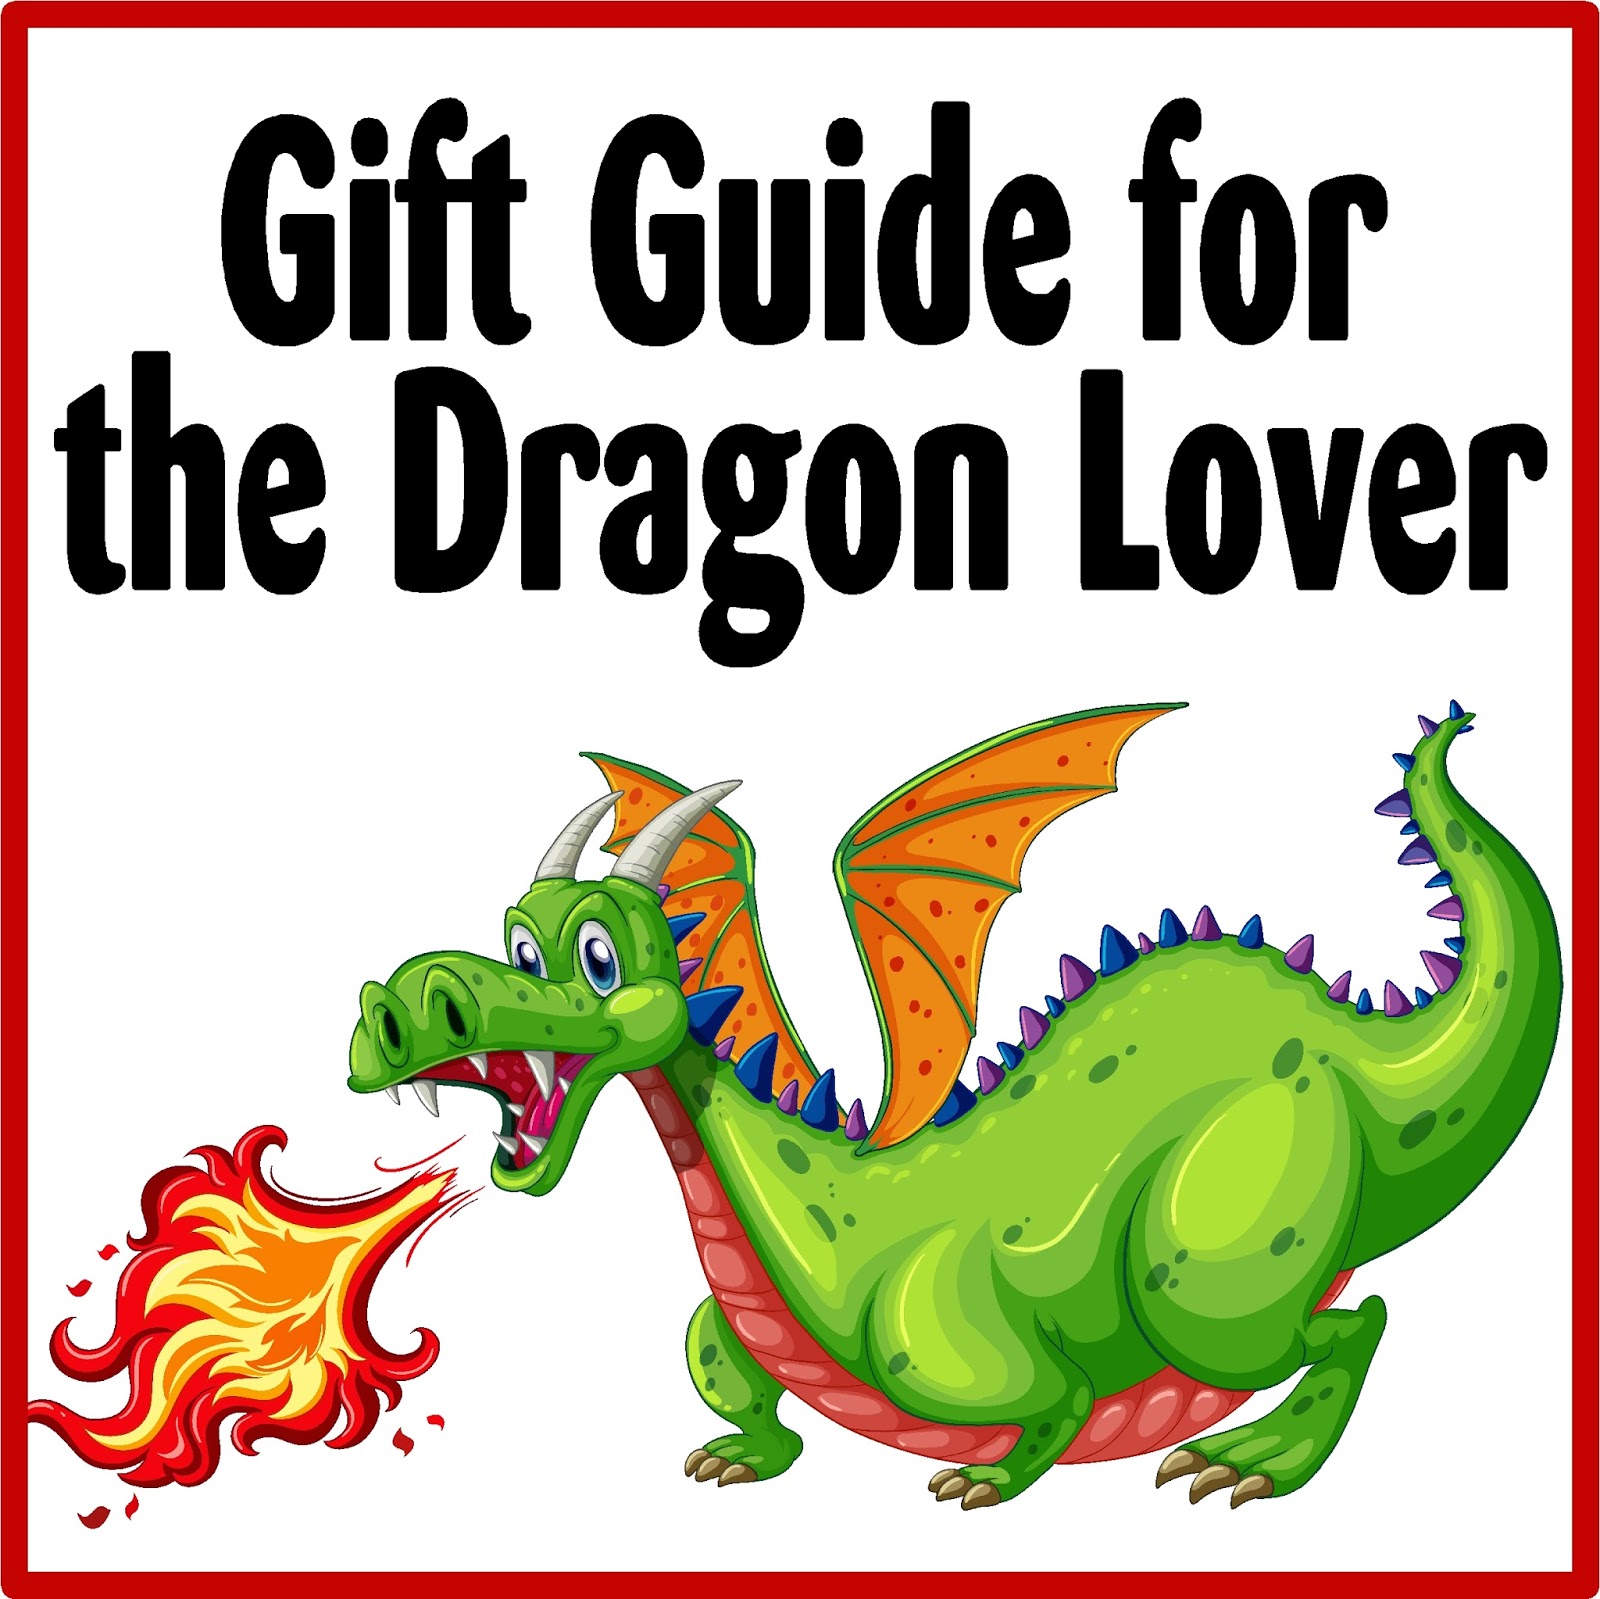 Счастье в подарок дракону 2 часть читать. Подарок дракону по немецки. Дракон не подарок. Гифт дракон извивается. Не подарок для драконов.